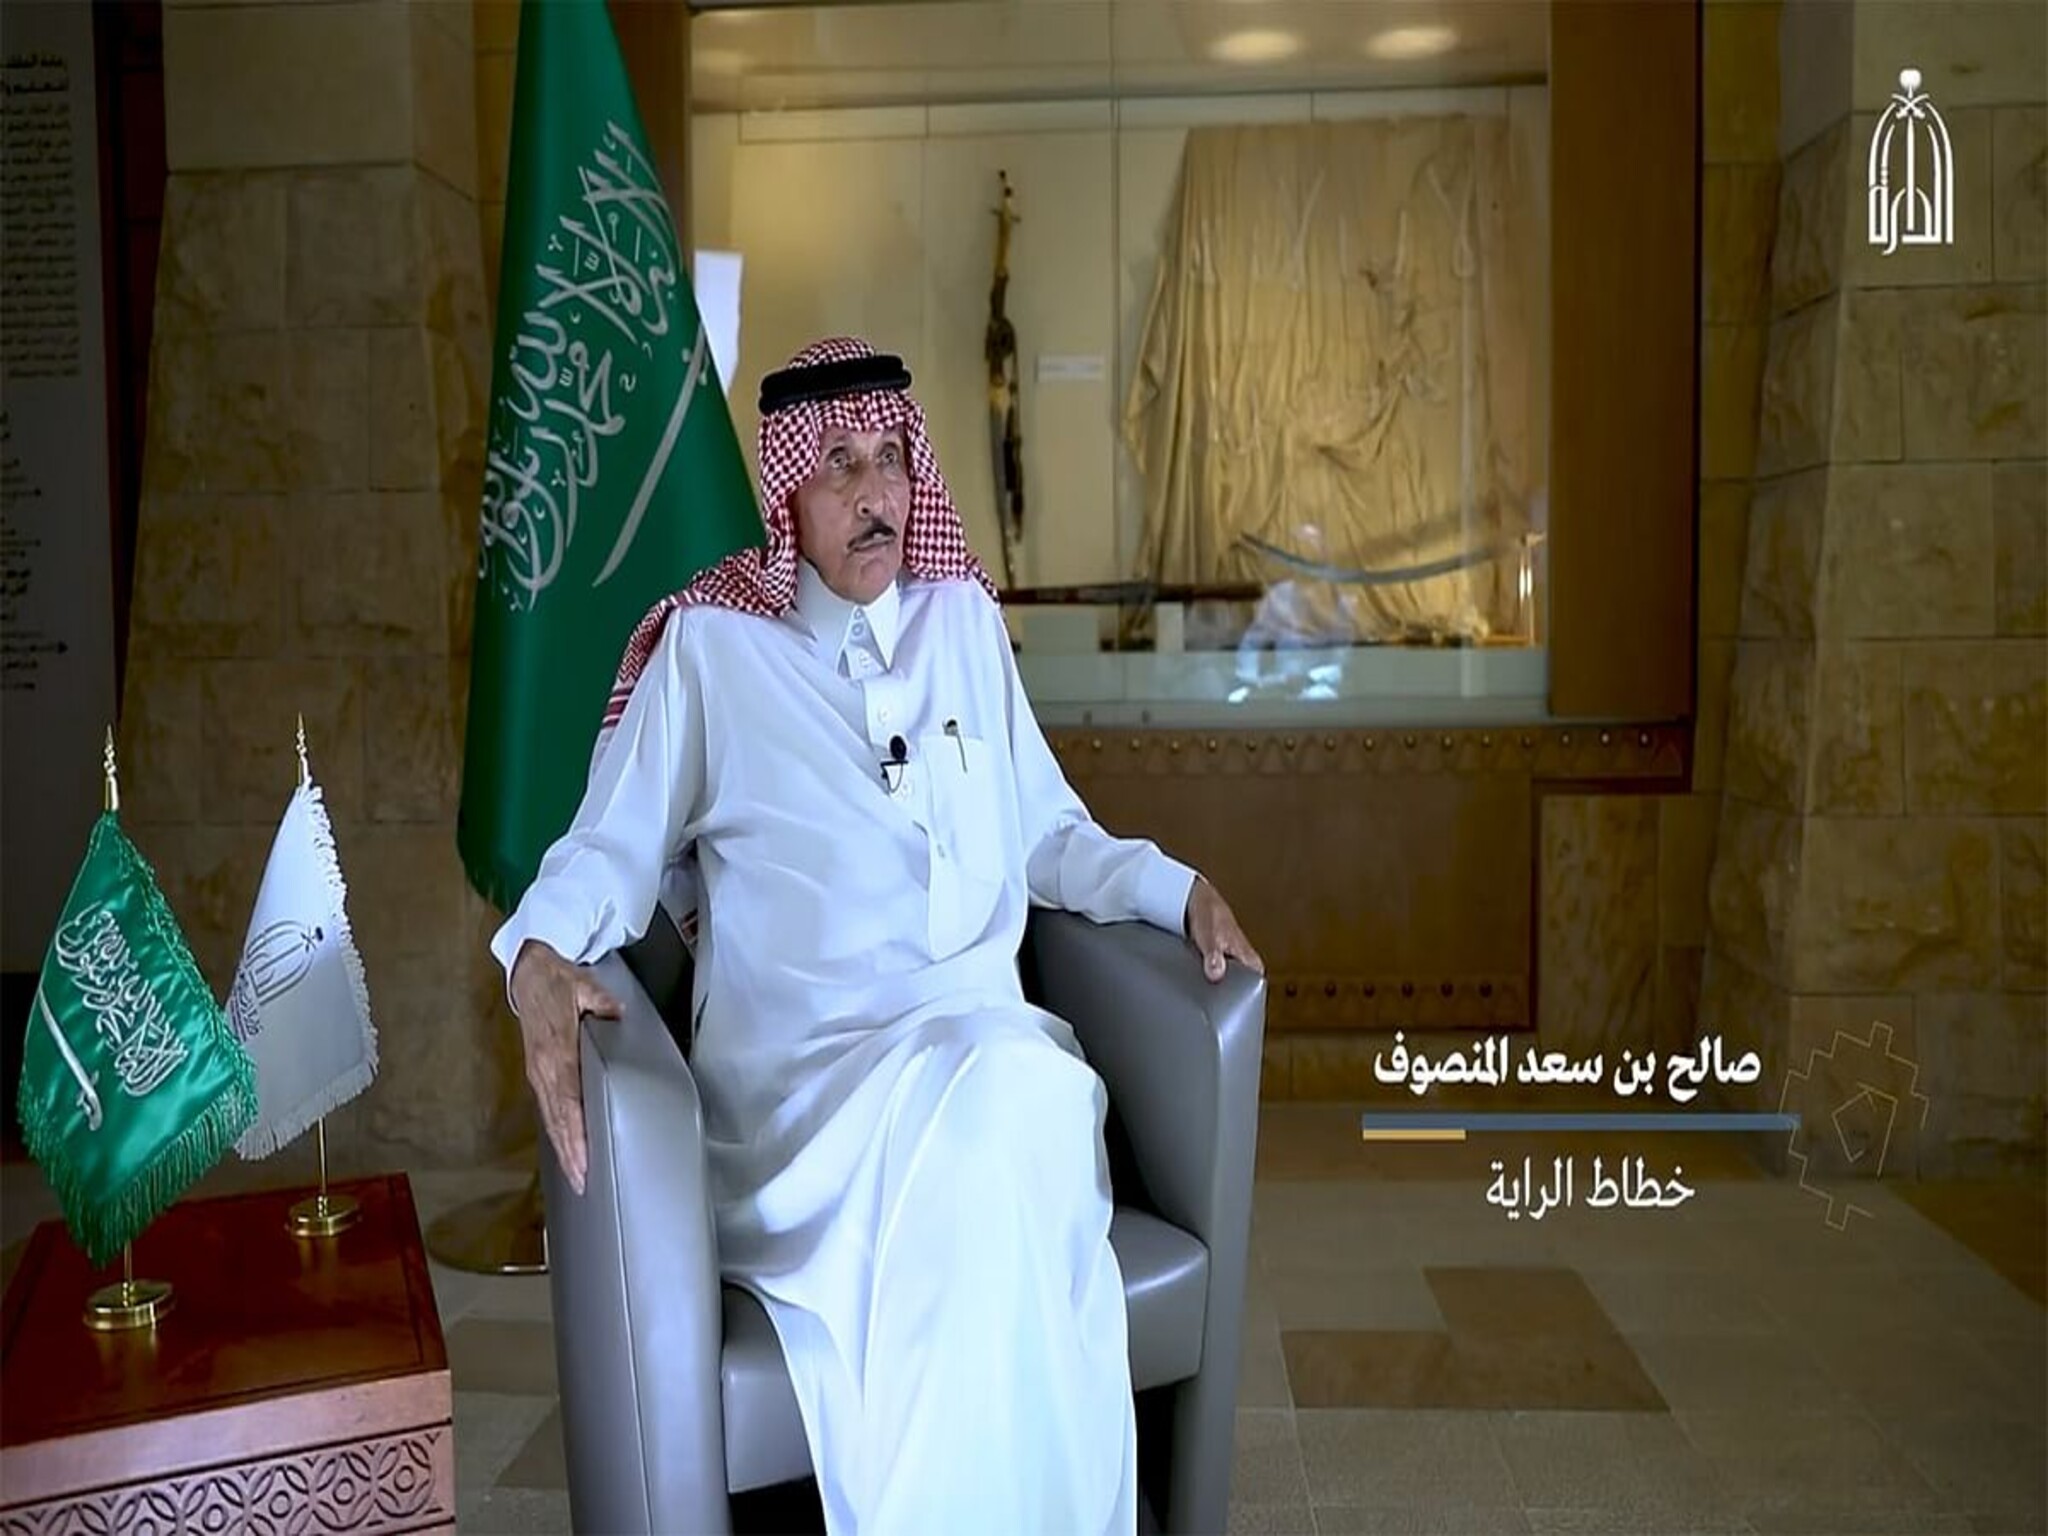 وفاة «خطاط العلم السعودي» وذلك قبل ساعات من أحتفال المملكة «بيوم العلم»